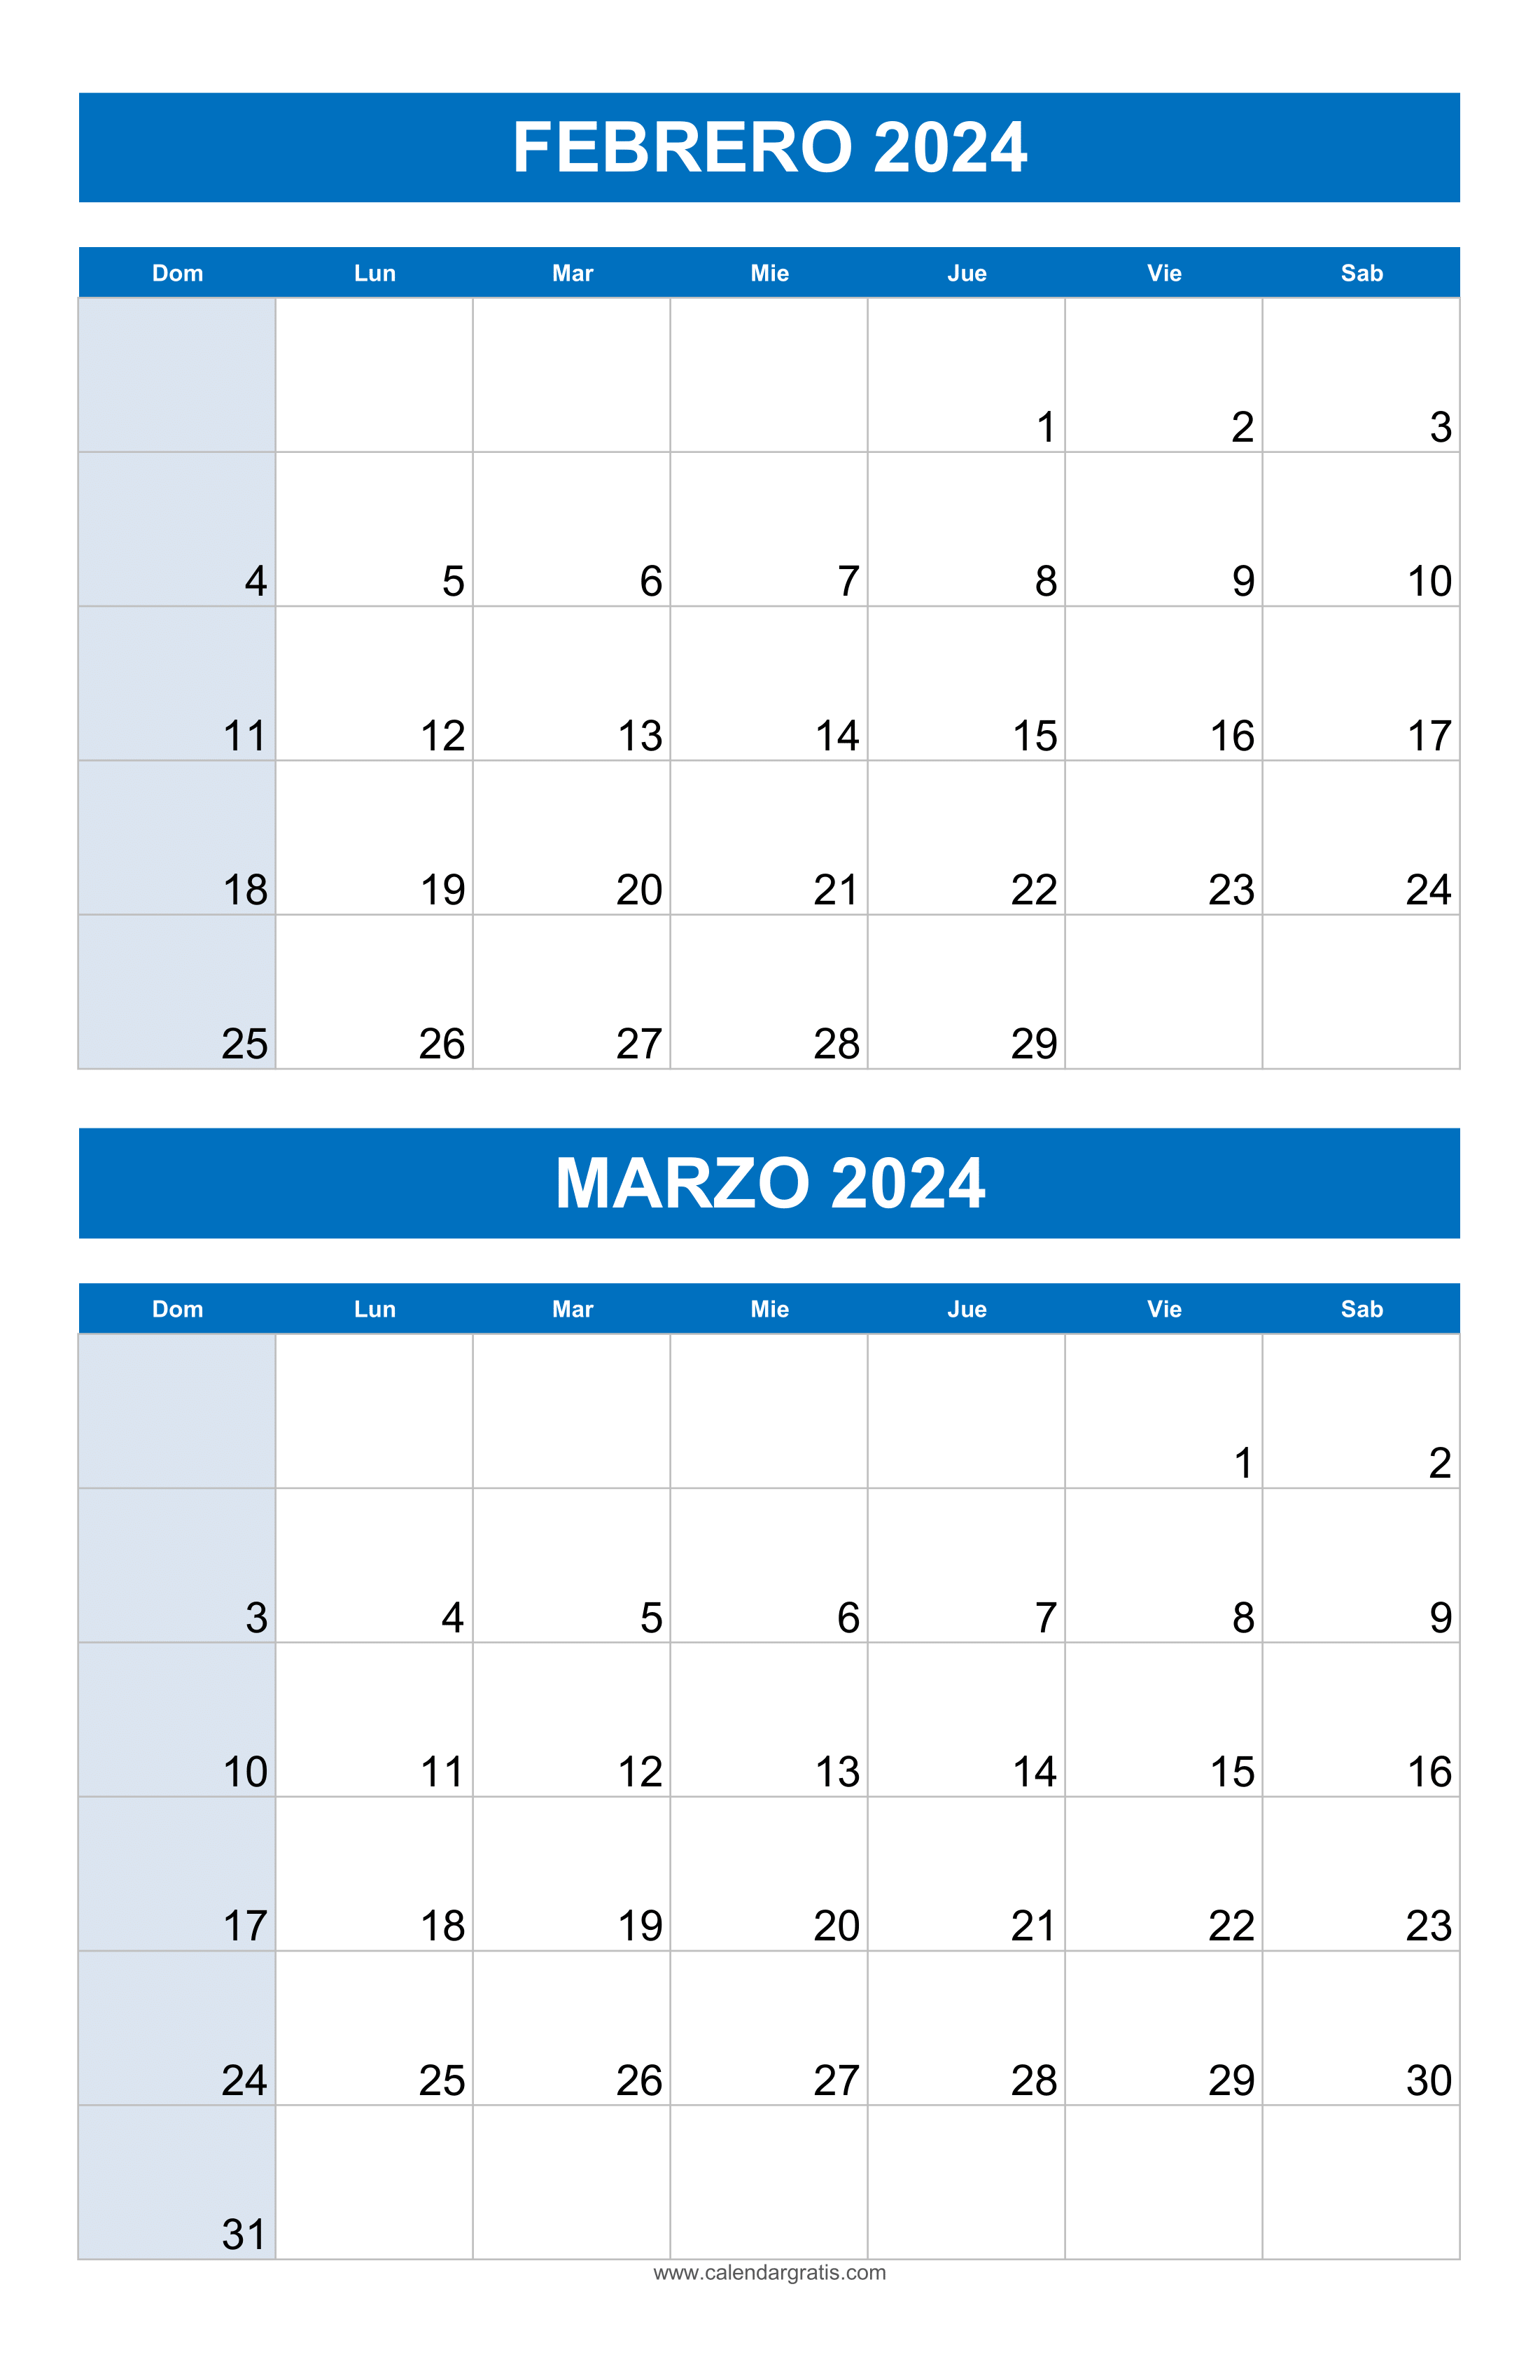 Vista del calendario para Febrero y Marzo 2024